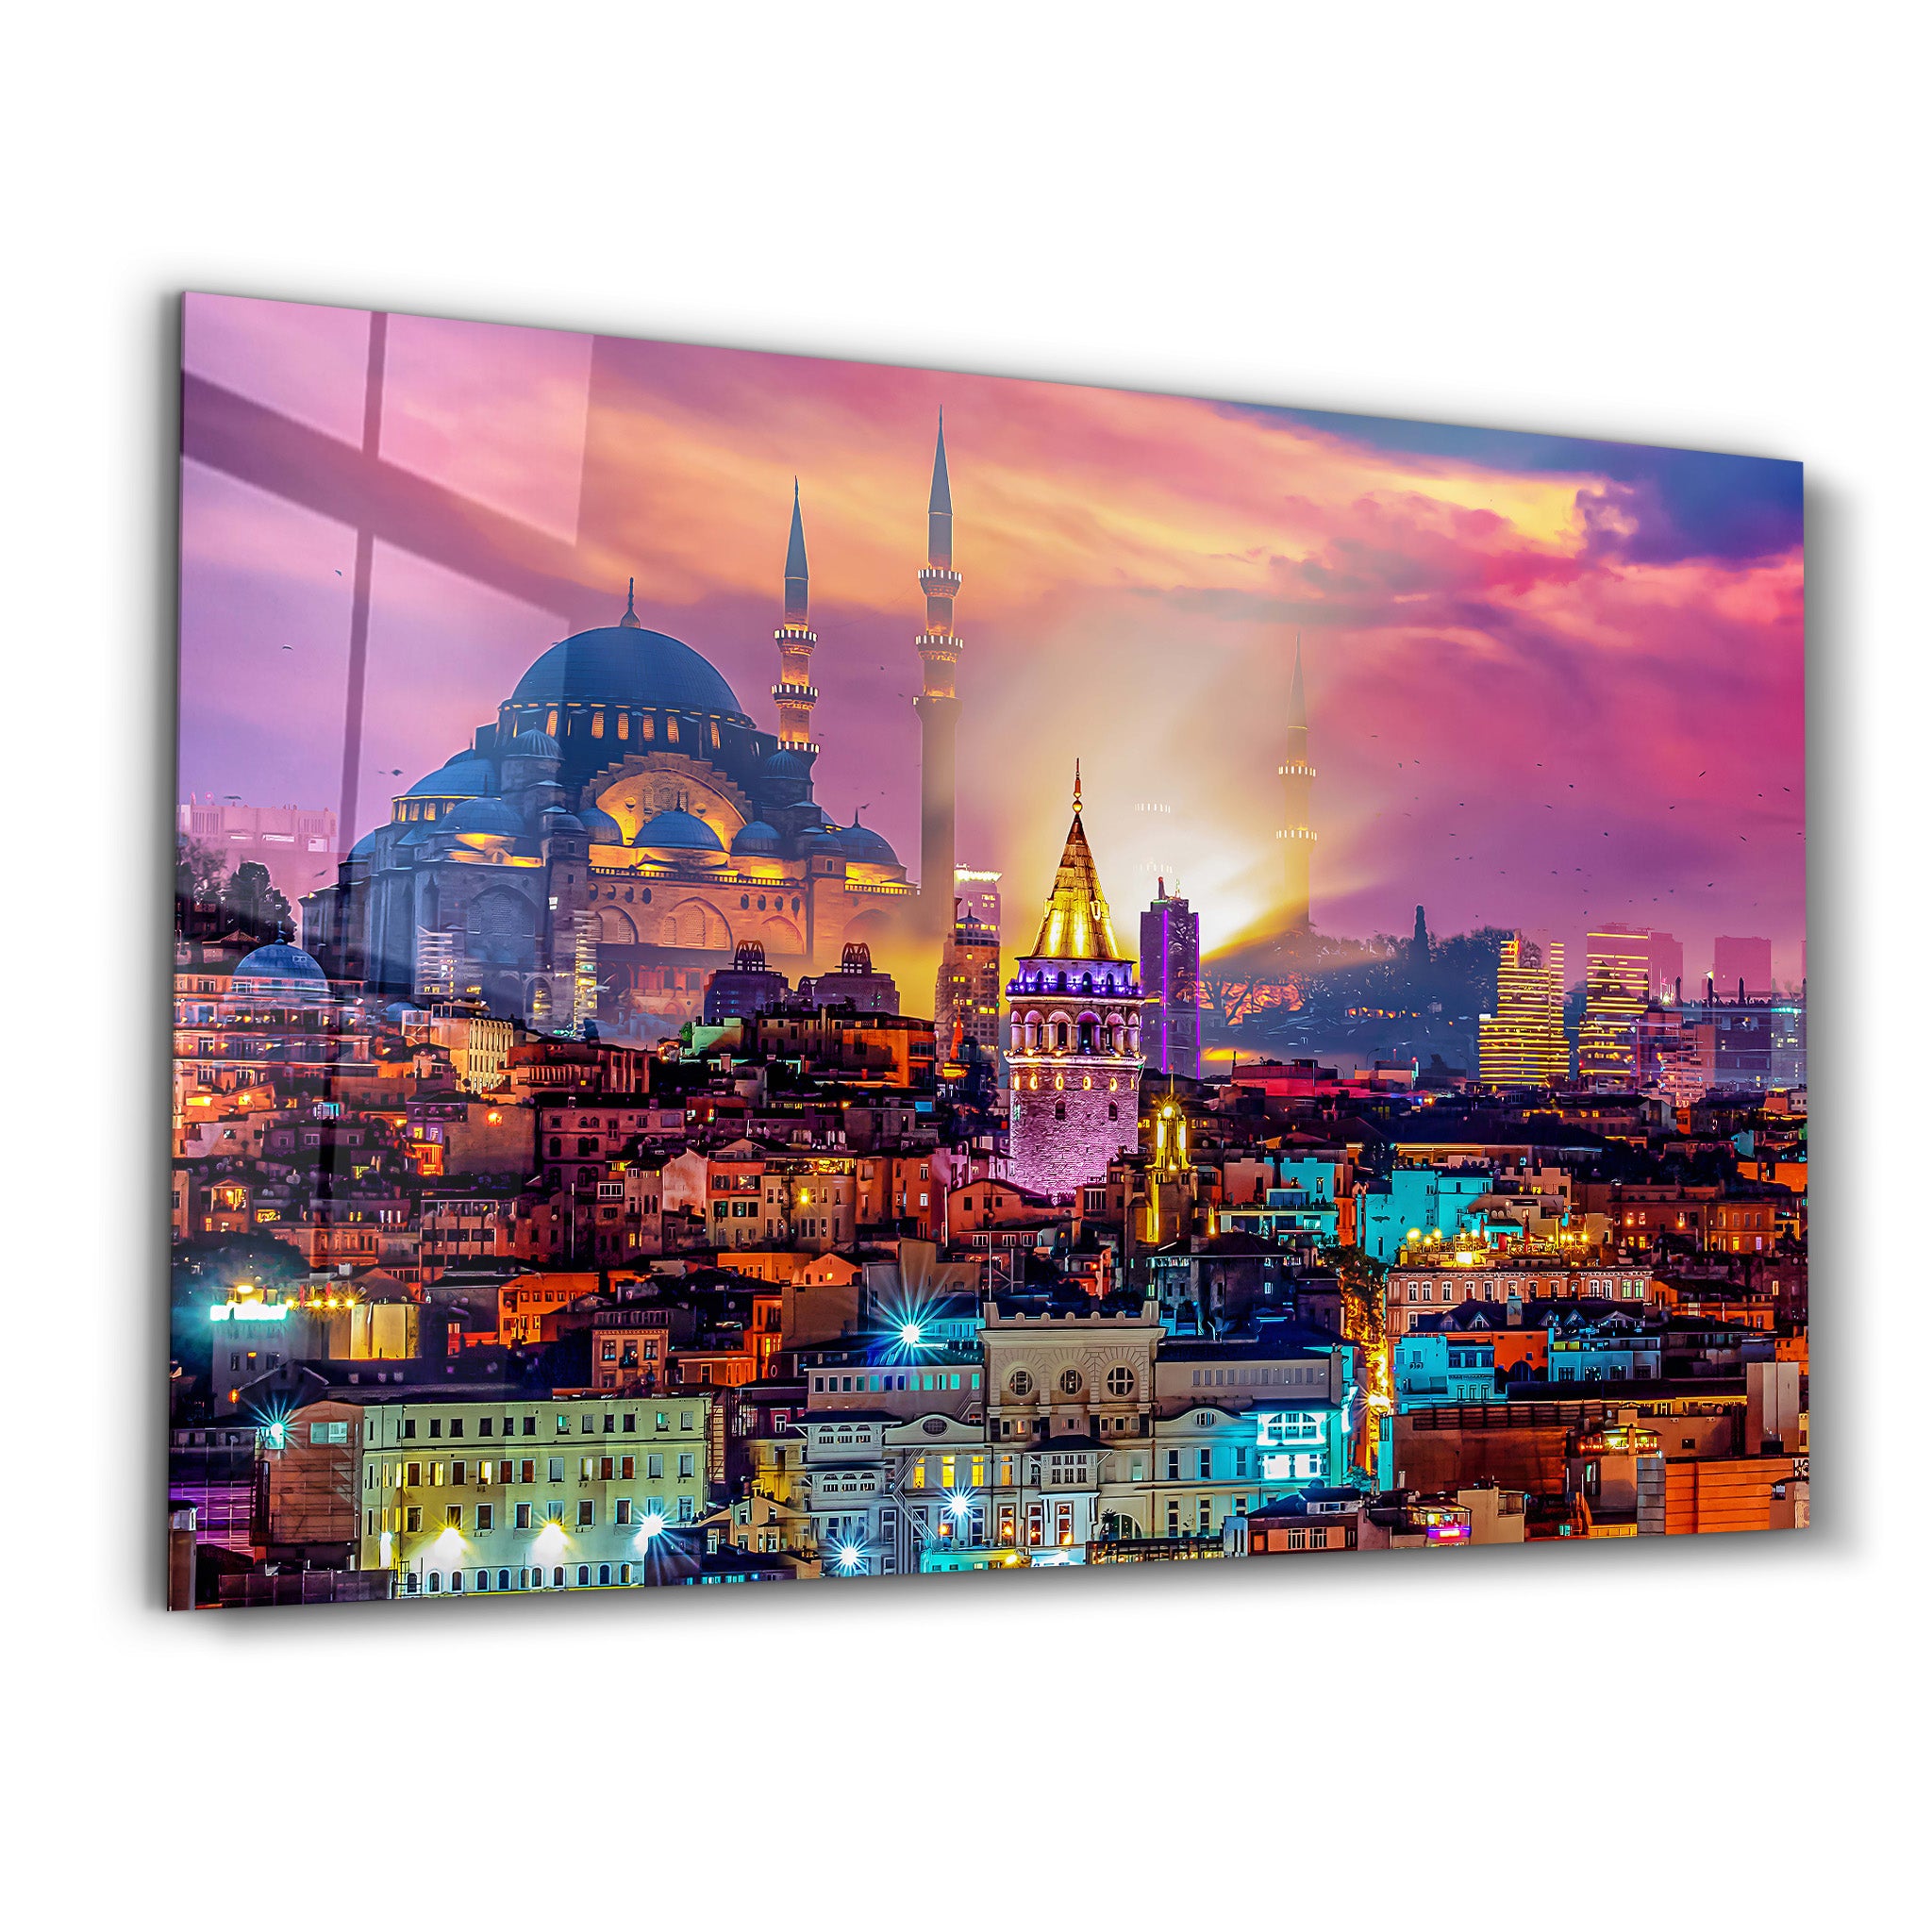 ・"Istanbul - Turkey"・Glass Wall Art - ArtDesigna Glass Printing Wall Art